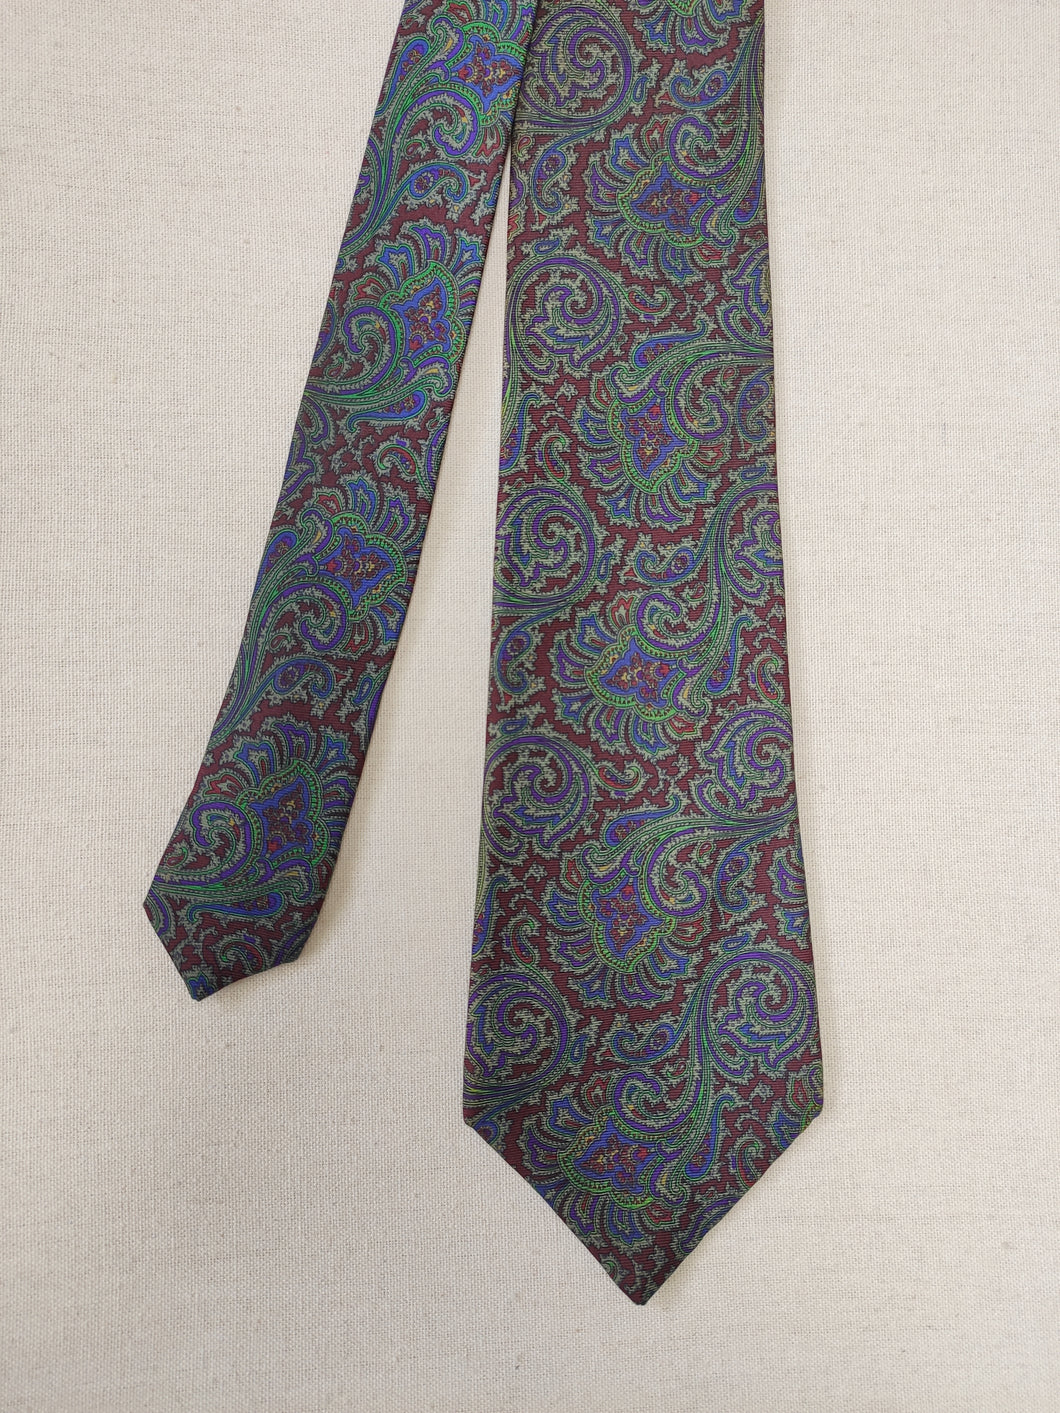 Lanvin Paris cravate vintage en soie à motif paisley Made in France